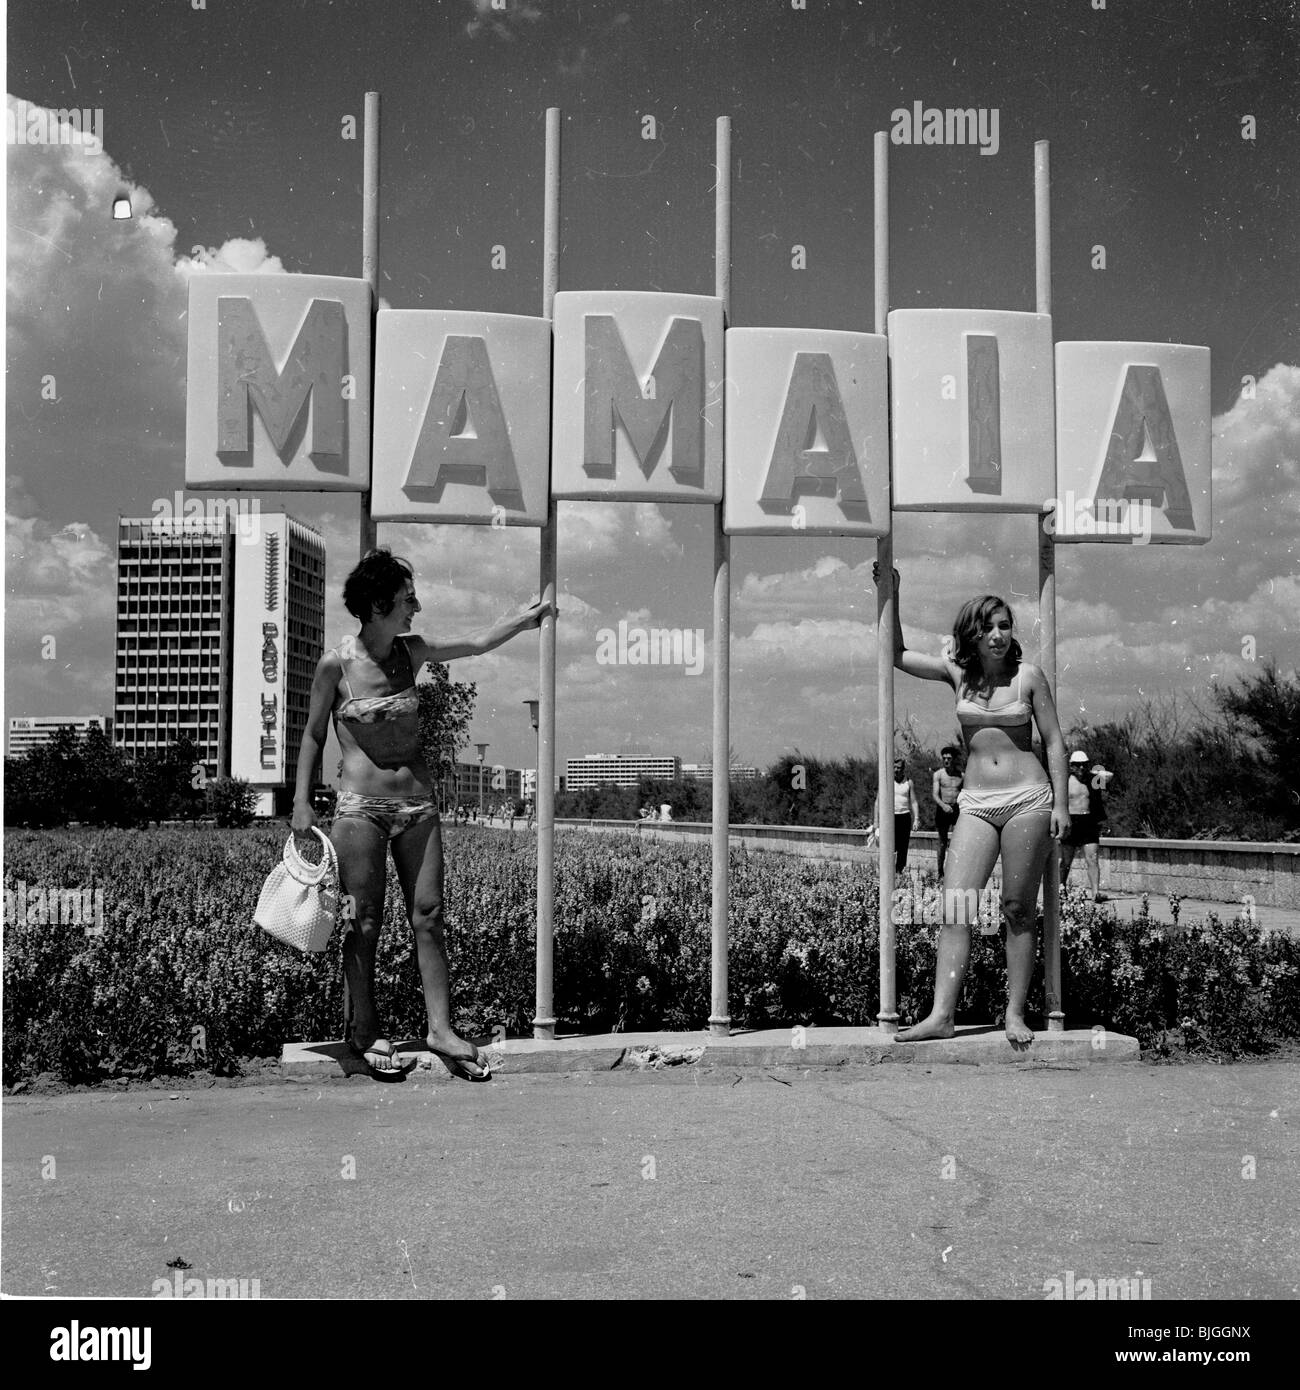 Degli anni Cinquanta, Romania. Due donne in costume da stand sotto il segno "amaia', la promozione di un resort vicino Constantsa sul Mar Nero. Foto Stock